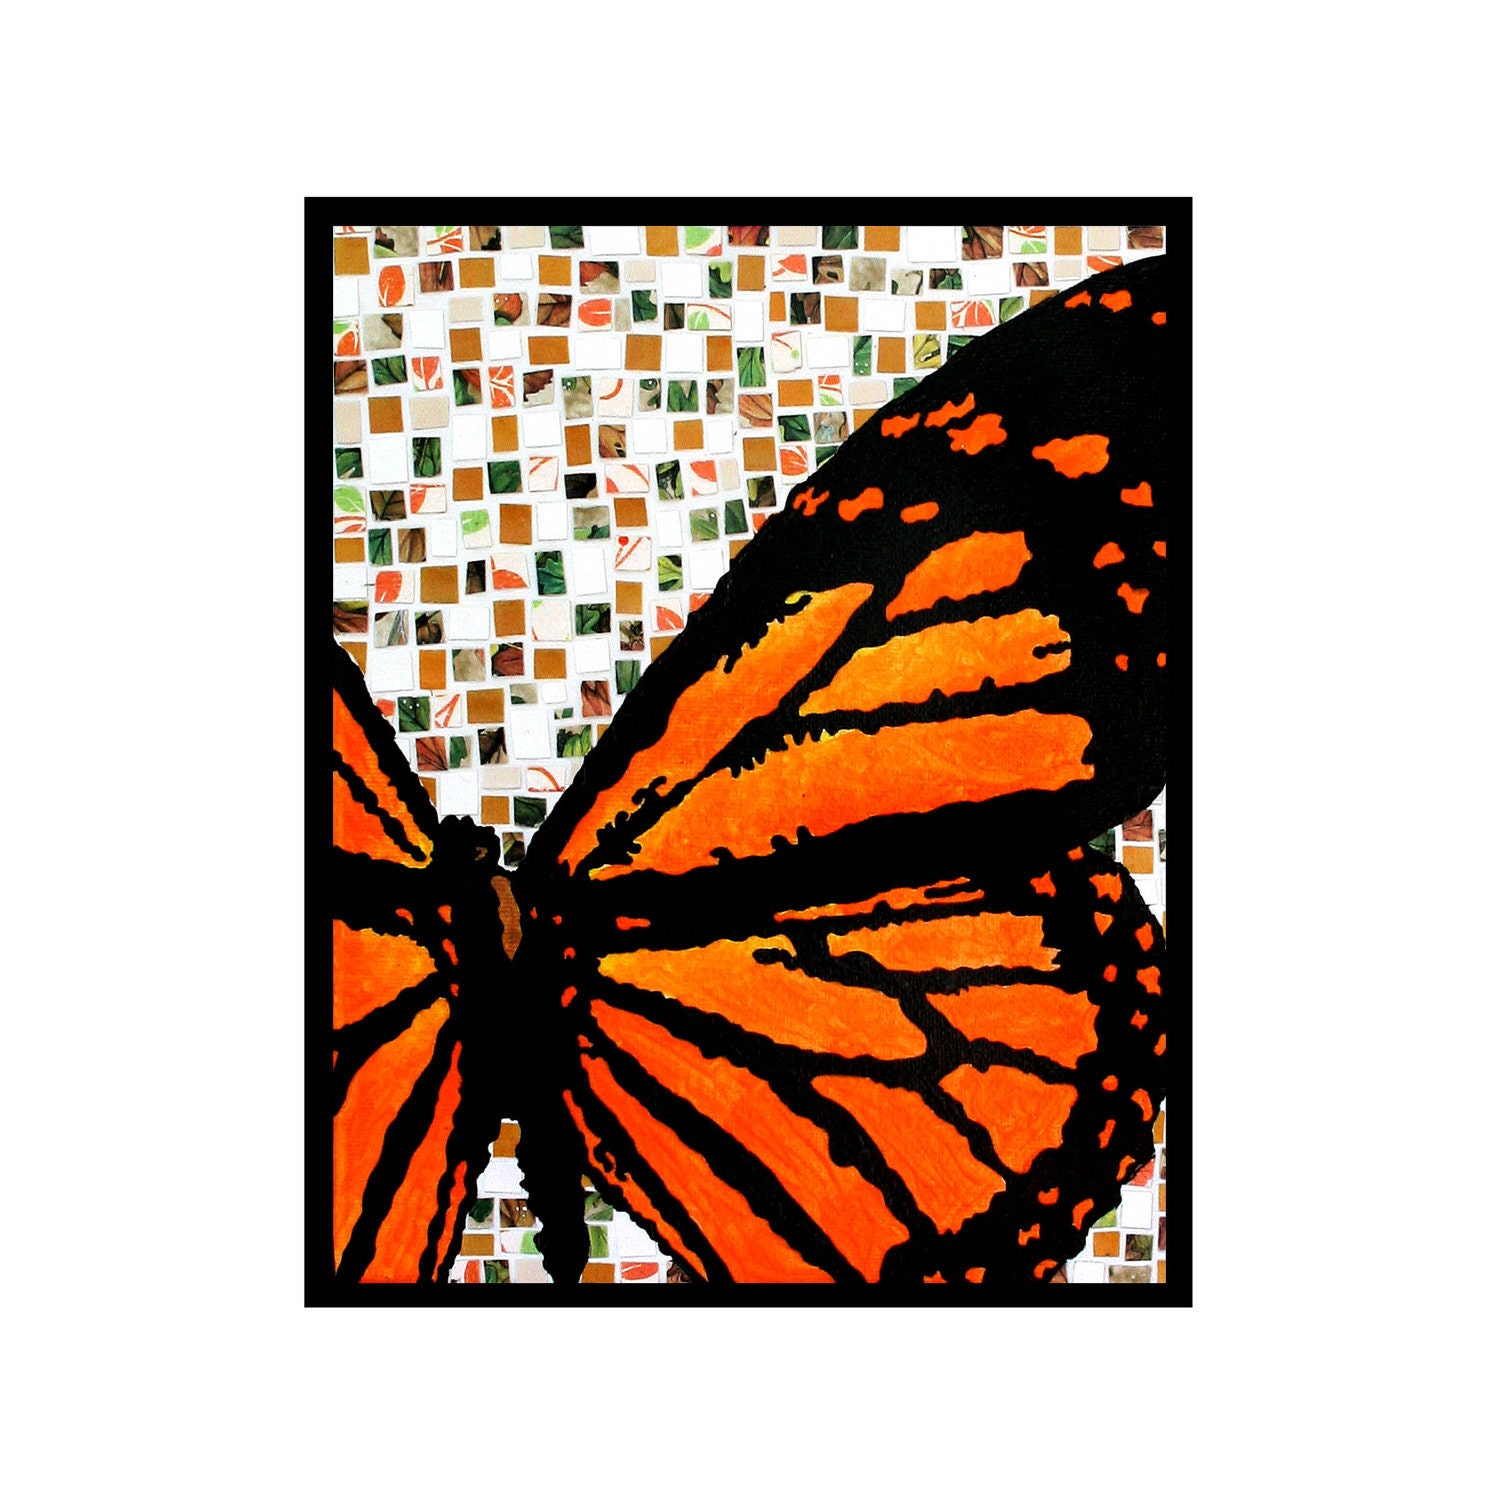 Cartoon Monarch Butterfly